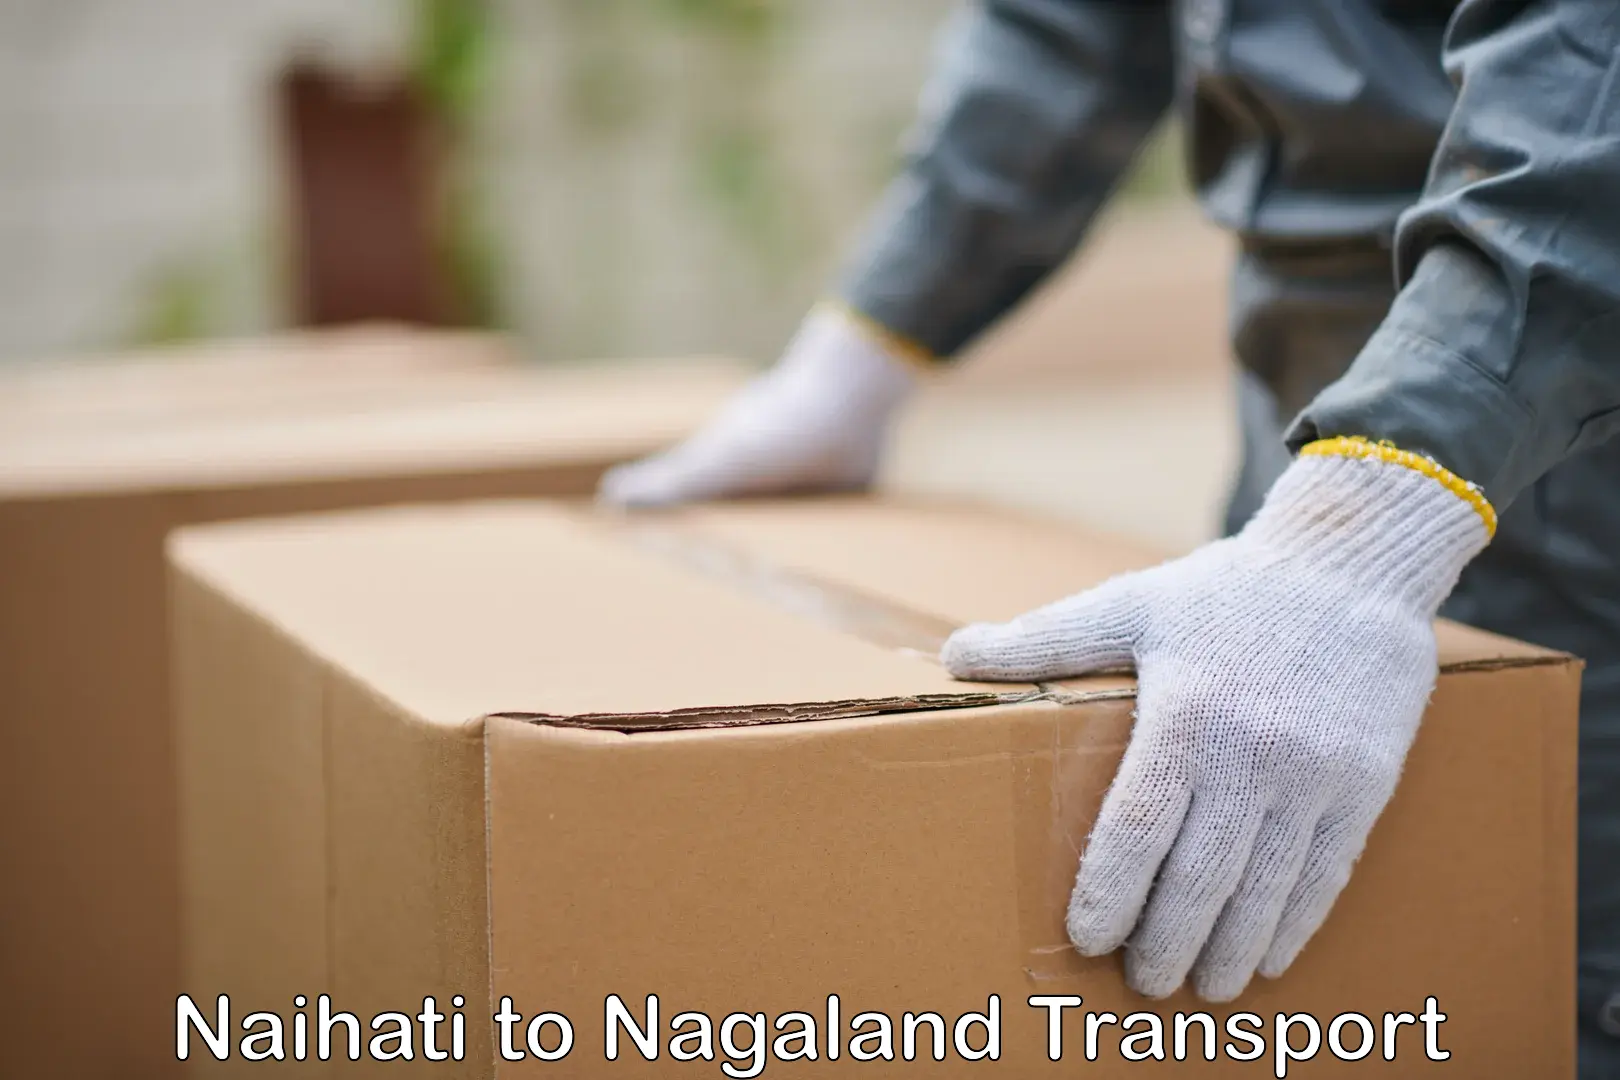 Daily parcel service transport Naihati to NIT Nagaland